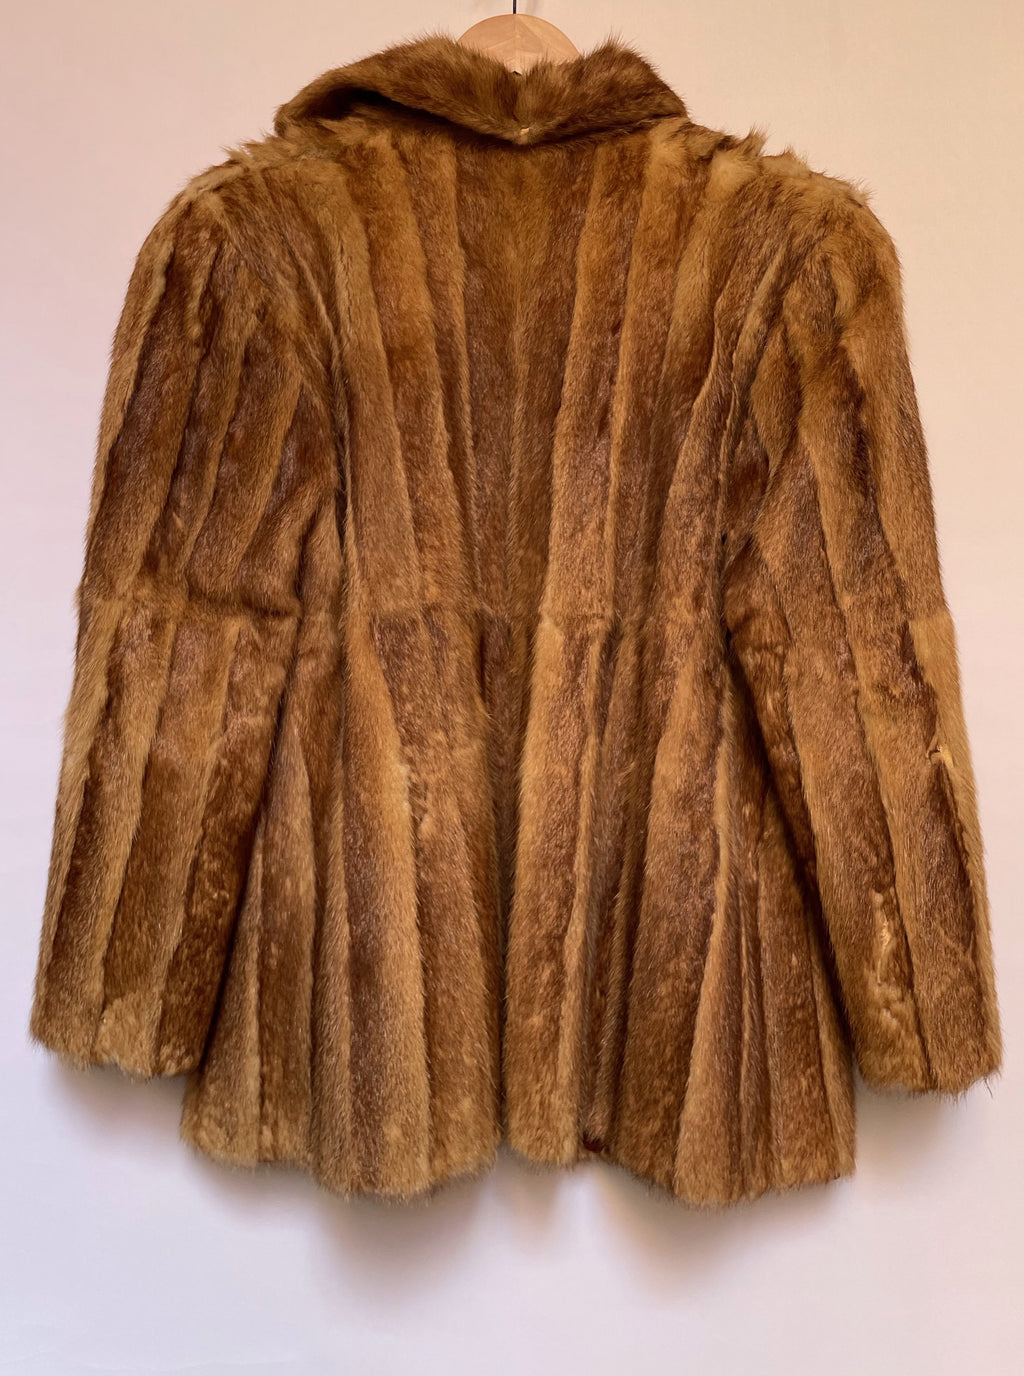 Striped Fur Jacket - AS IS - wear